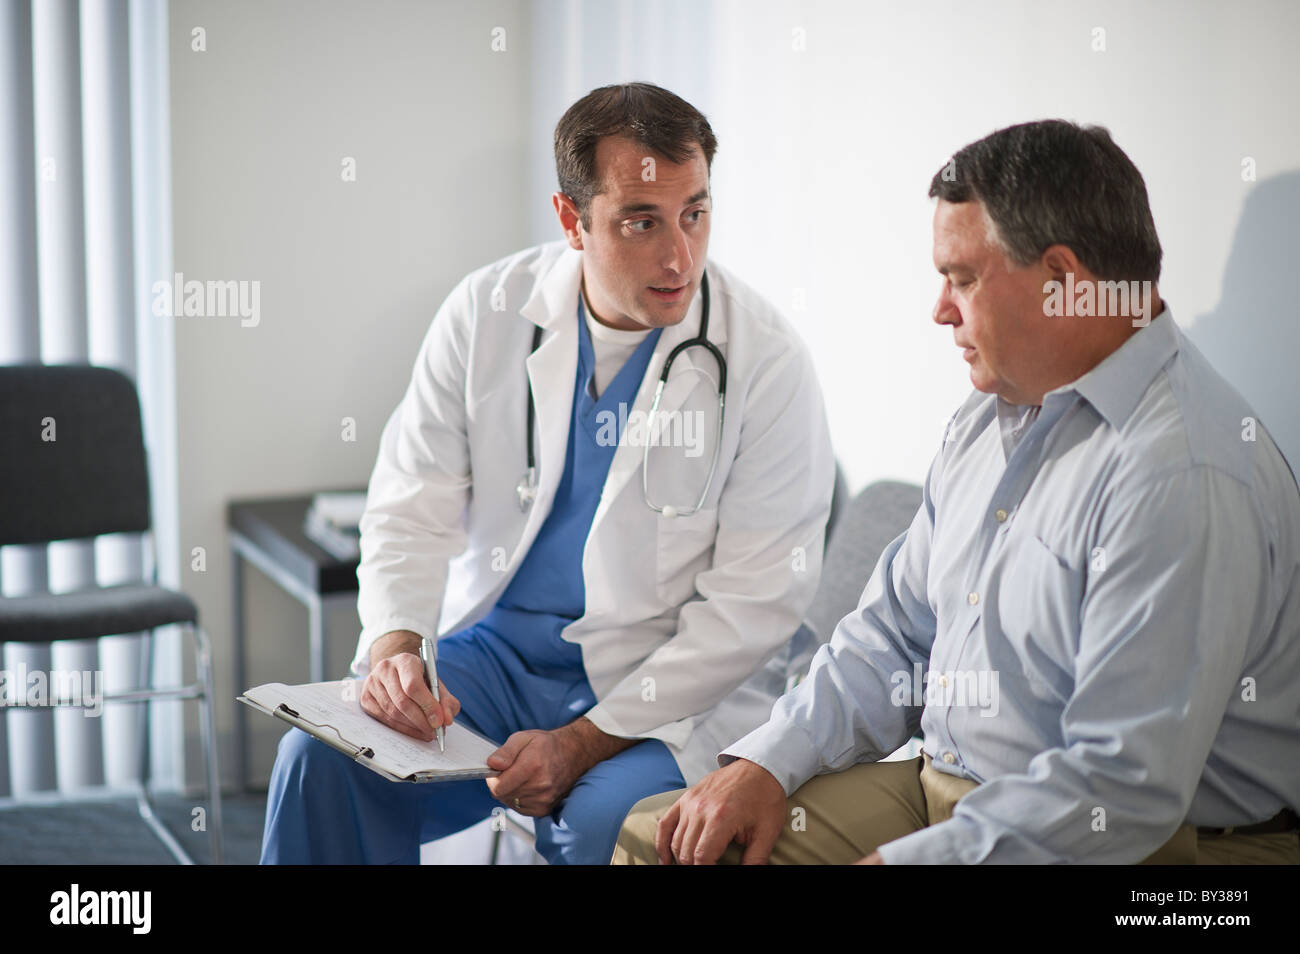 USA, New Jersey, Jersey City, Arzt medizinische Ergebnisse mit männlichen Patienten im Krankenhaus zu diskutieren Stockfoto